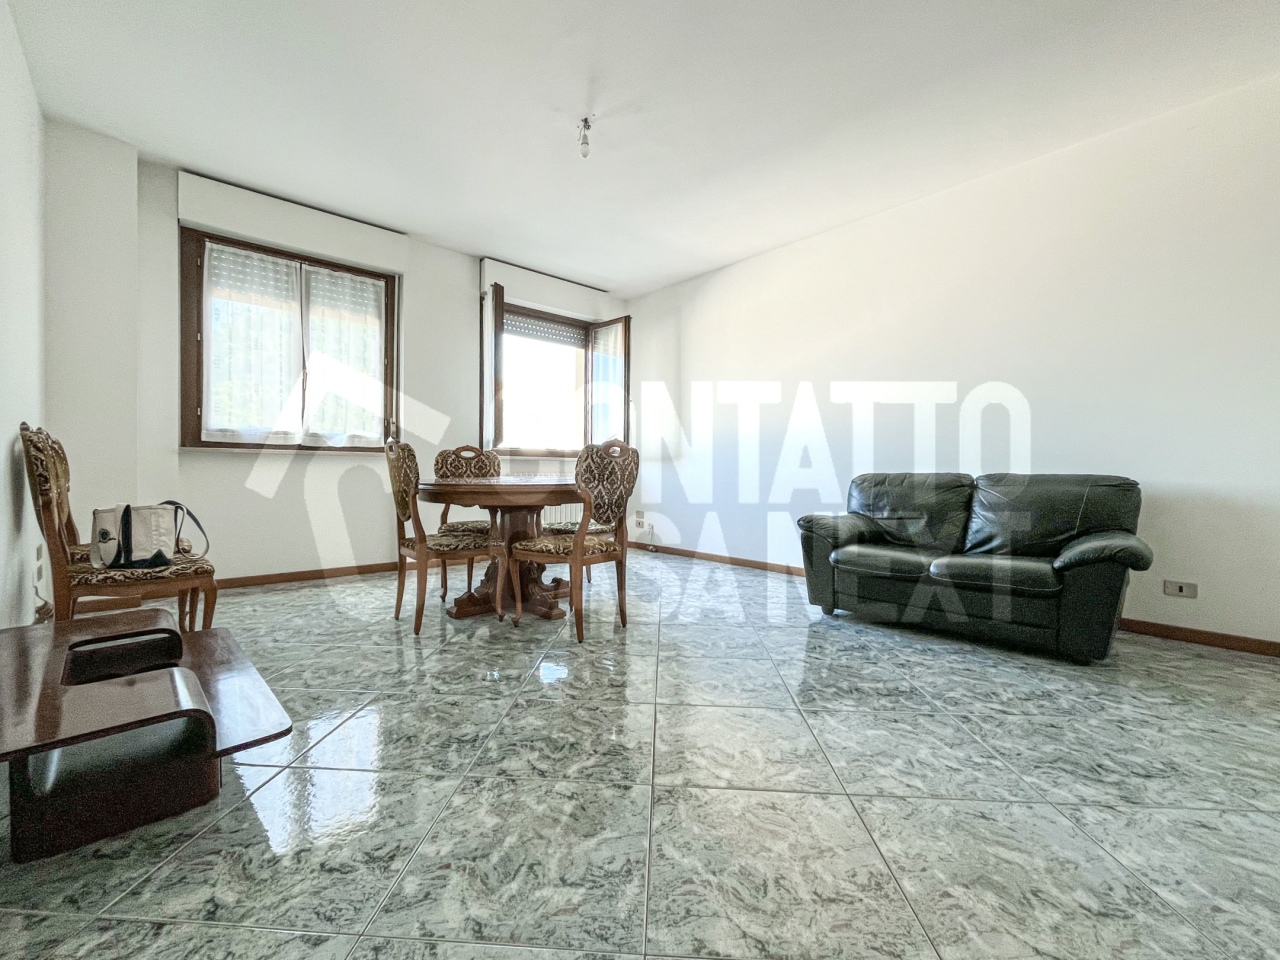 Appartamento in vendita a Monsano, 3 locali, prezzo € 130.000 | PortaleAgenzieImmobiliari.it